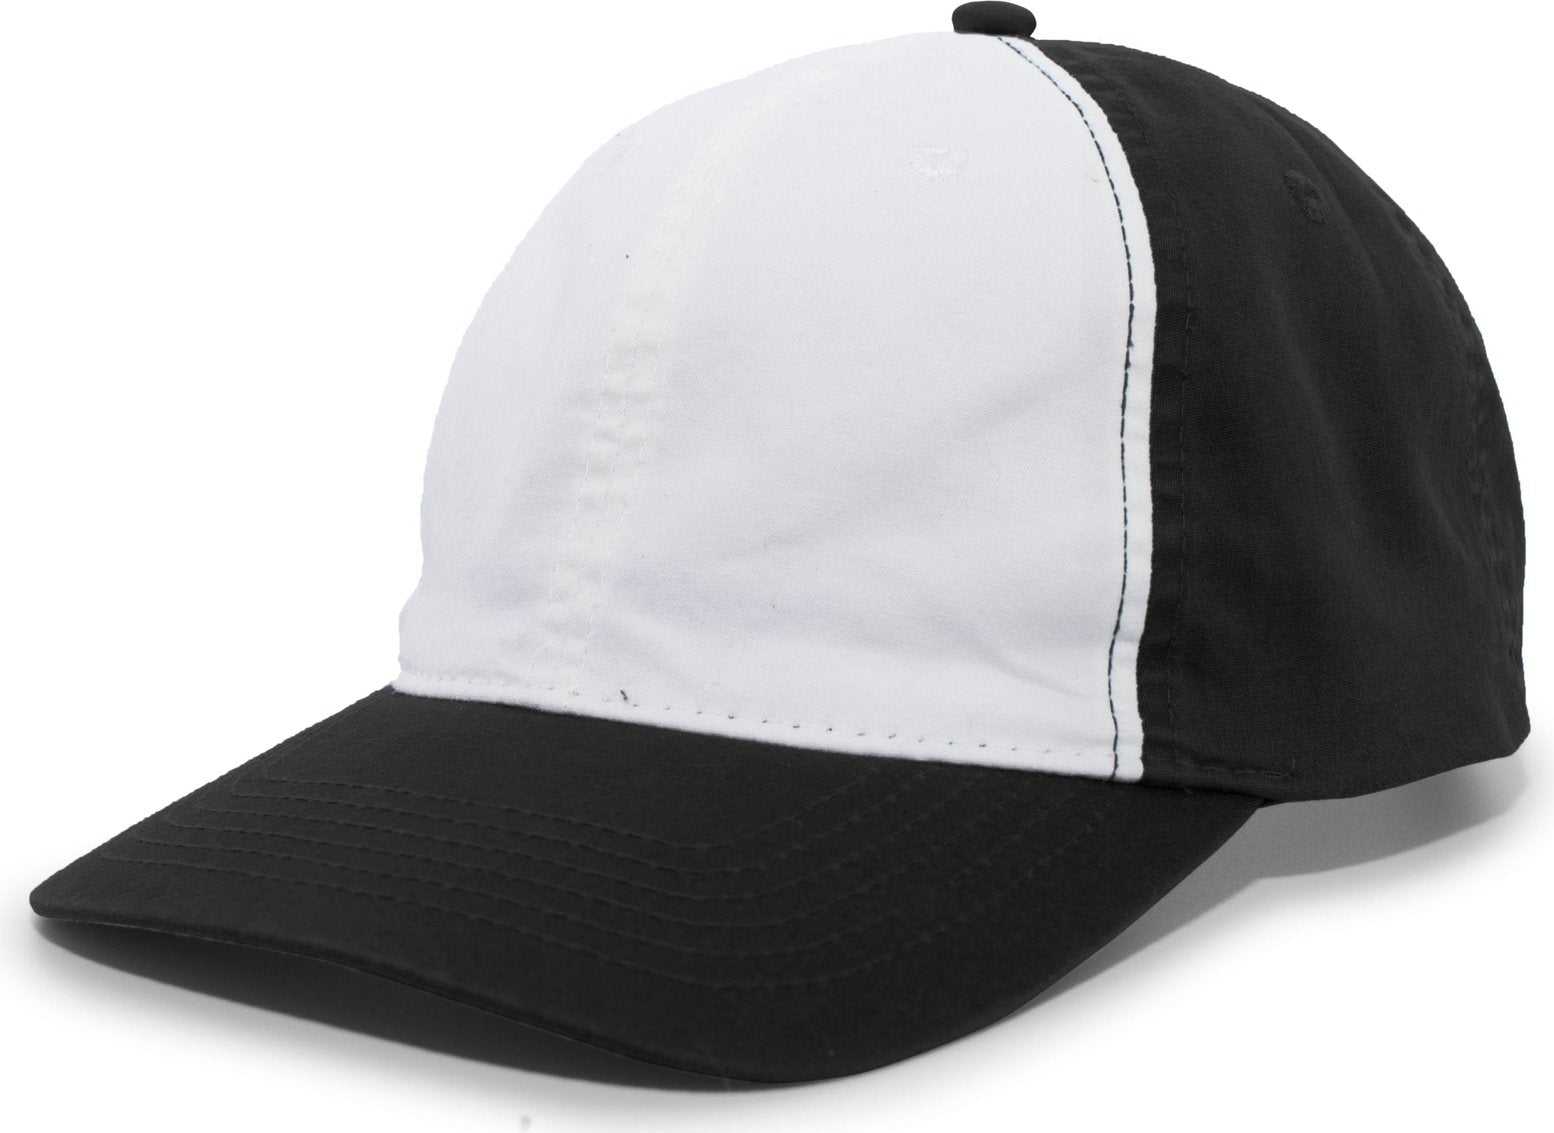 Pacific Headwear V57 Vintage Cotton Buckle Back Cap - Black White - HIT a Double